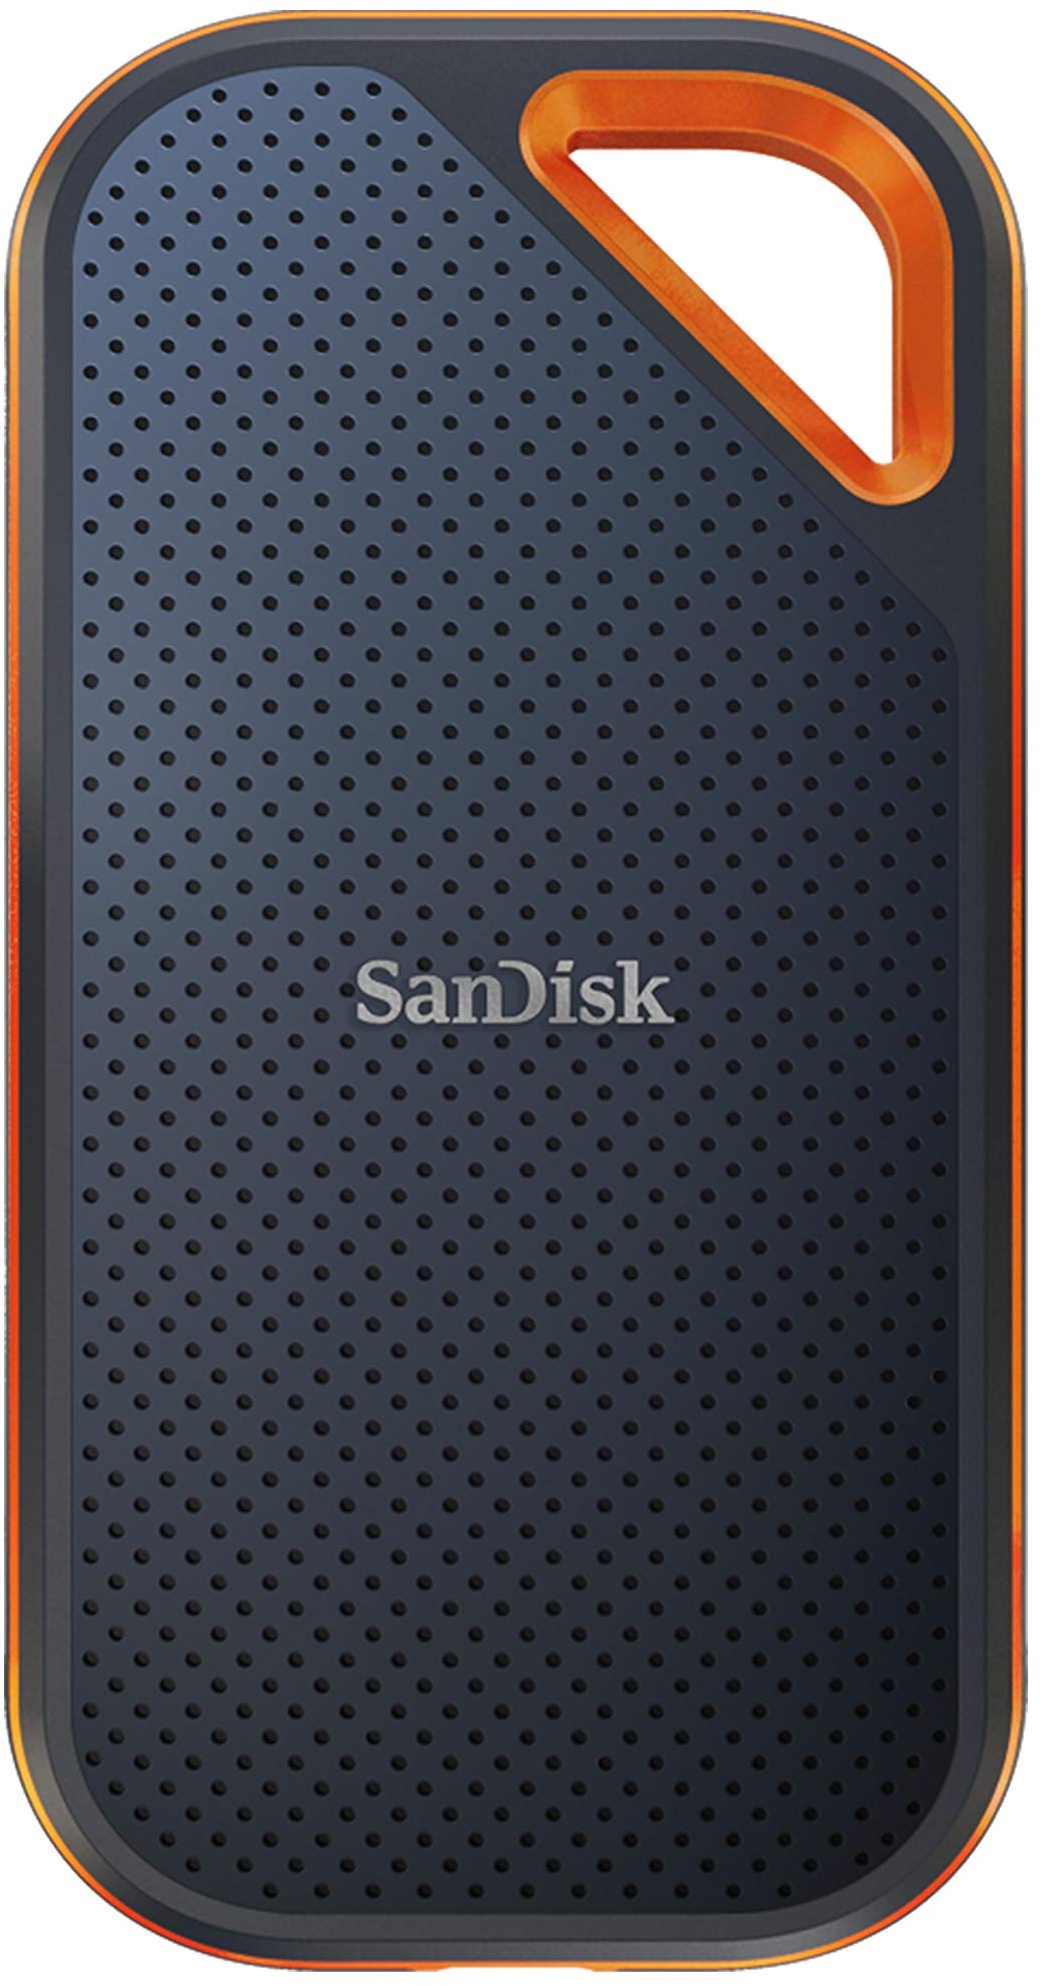 SanDisk Extreme PRO Portable SSD externe SSD 1 TB (externe Festplatte mit SSD Technologie 2,5 Zoll, 2000 MB/s Lesen und Schreiben, stoßfest, AES-Verschlüsselung, wasser- und staubfest) grau